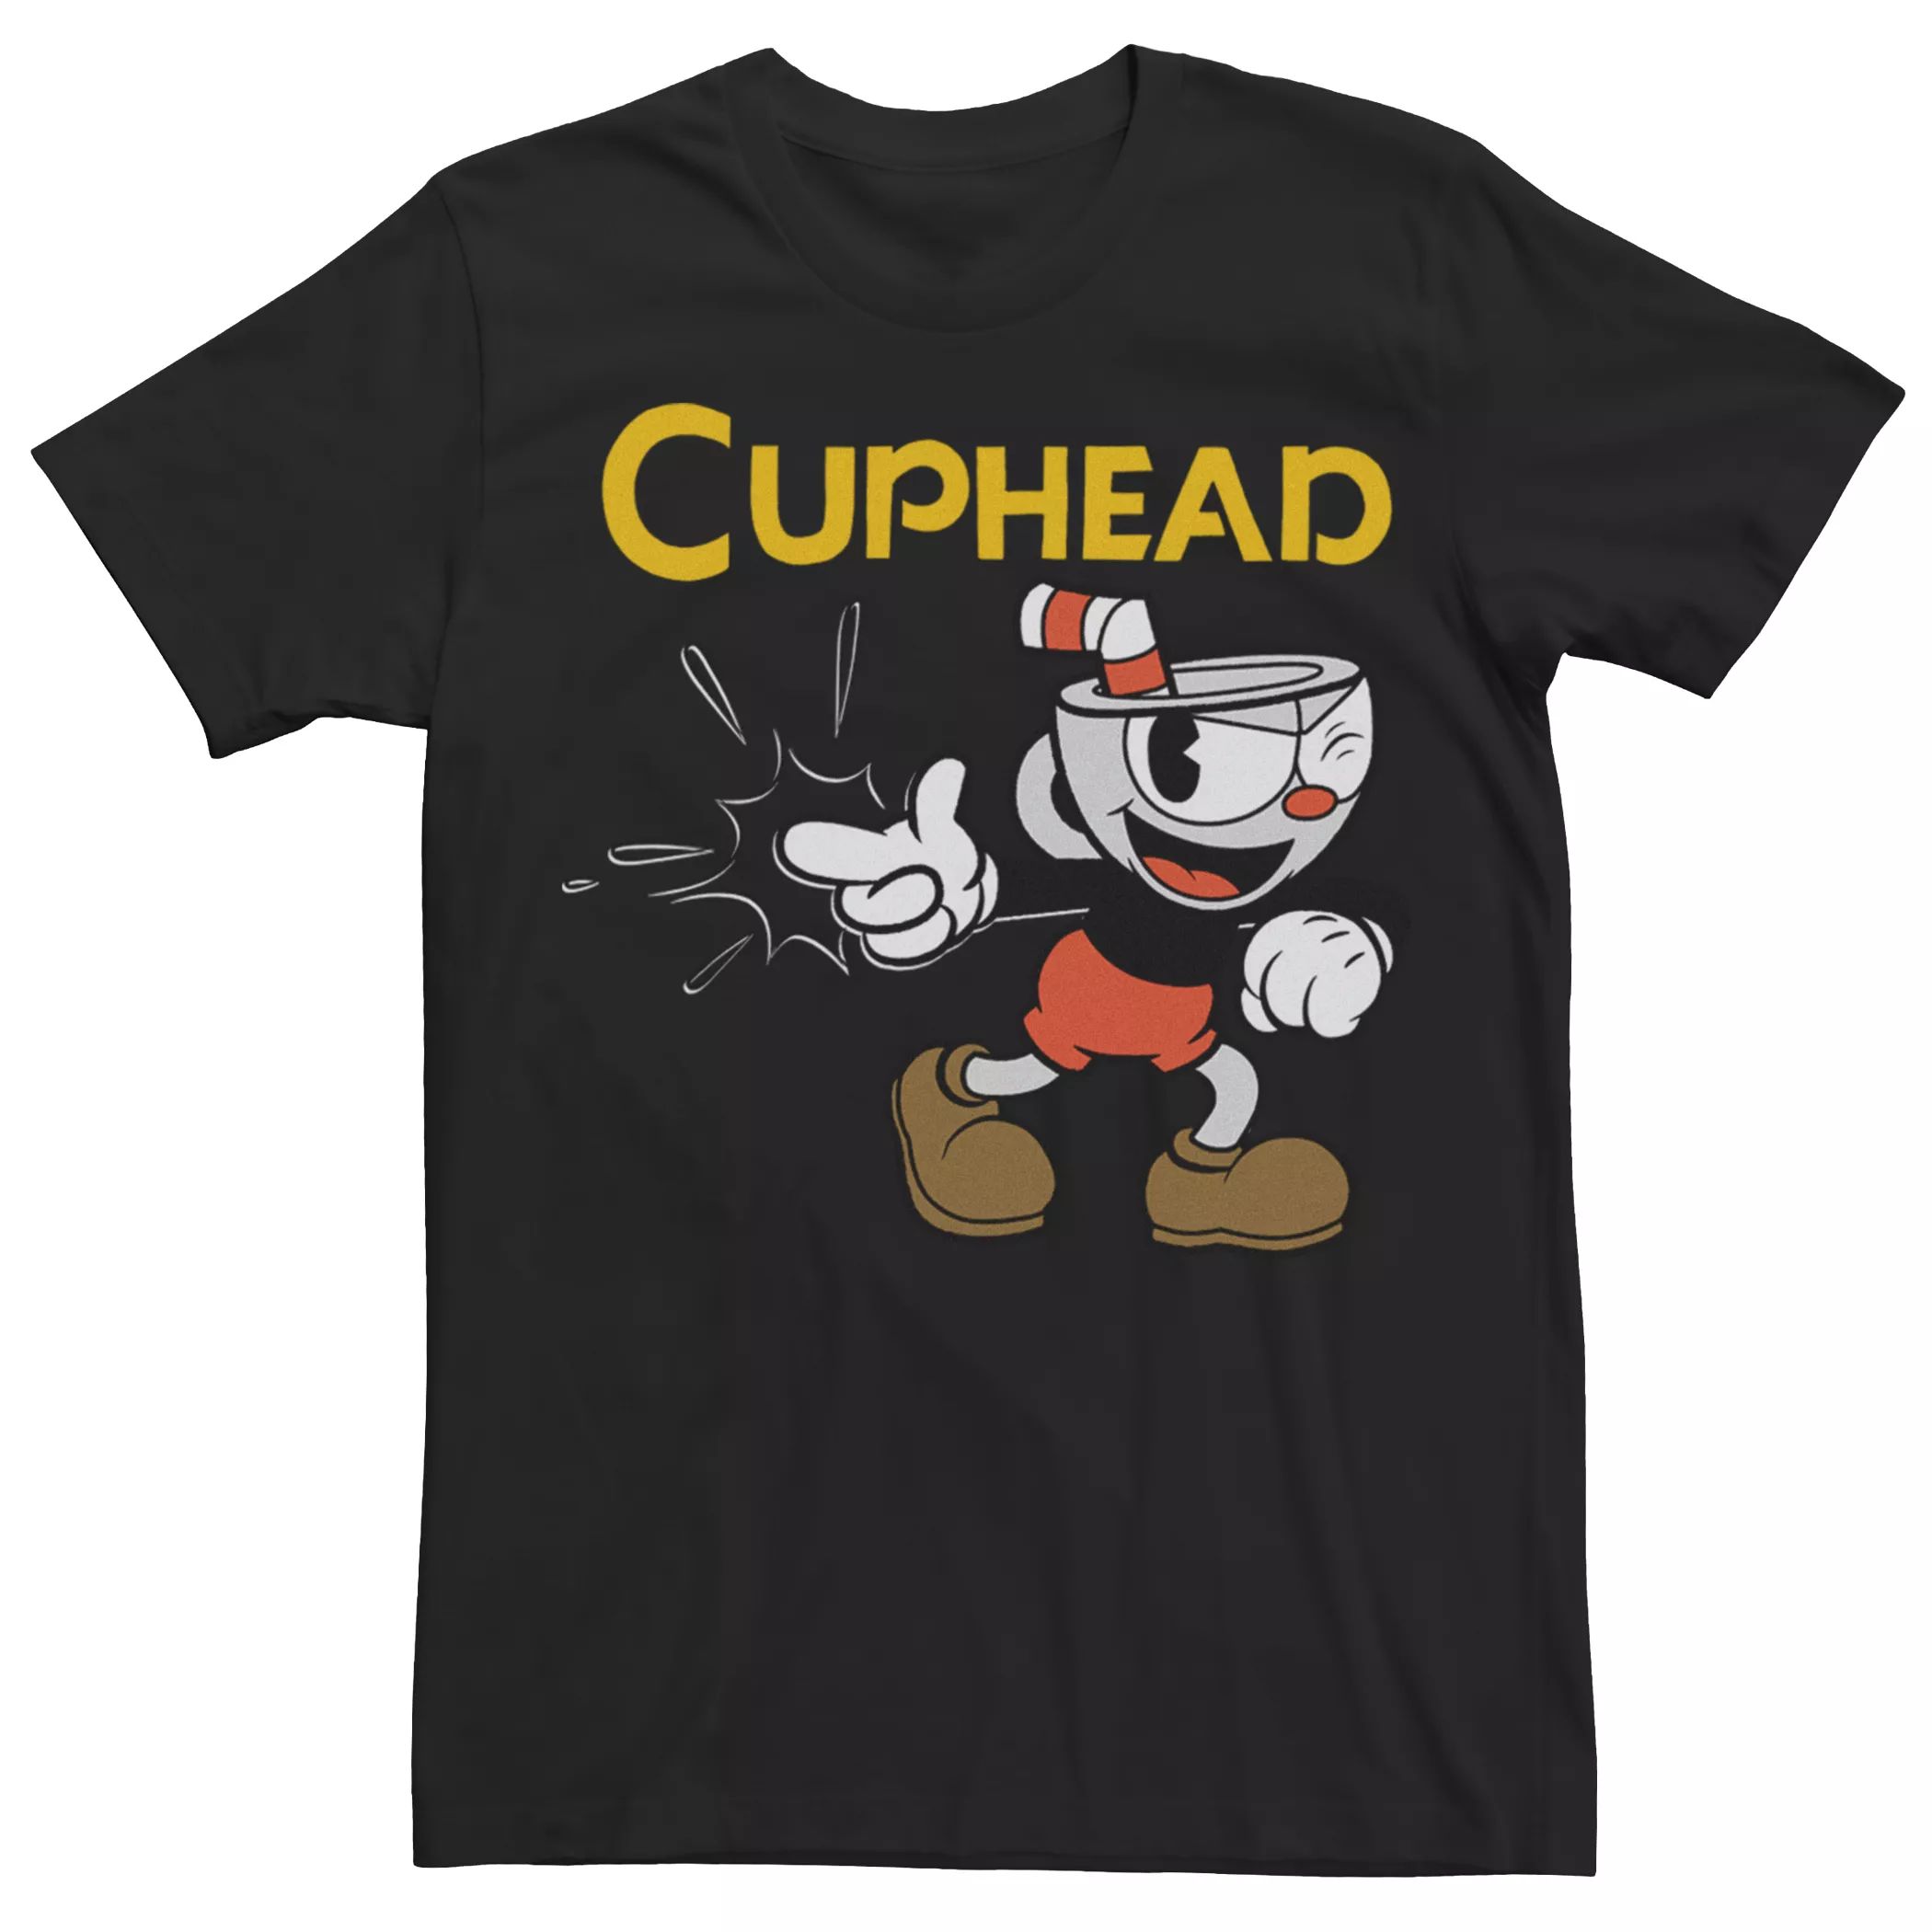 Мужская футболка с логотипом Cuphead Gotcha Licensed Character